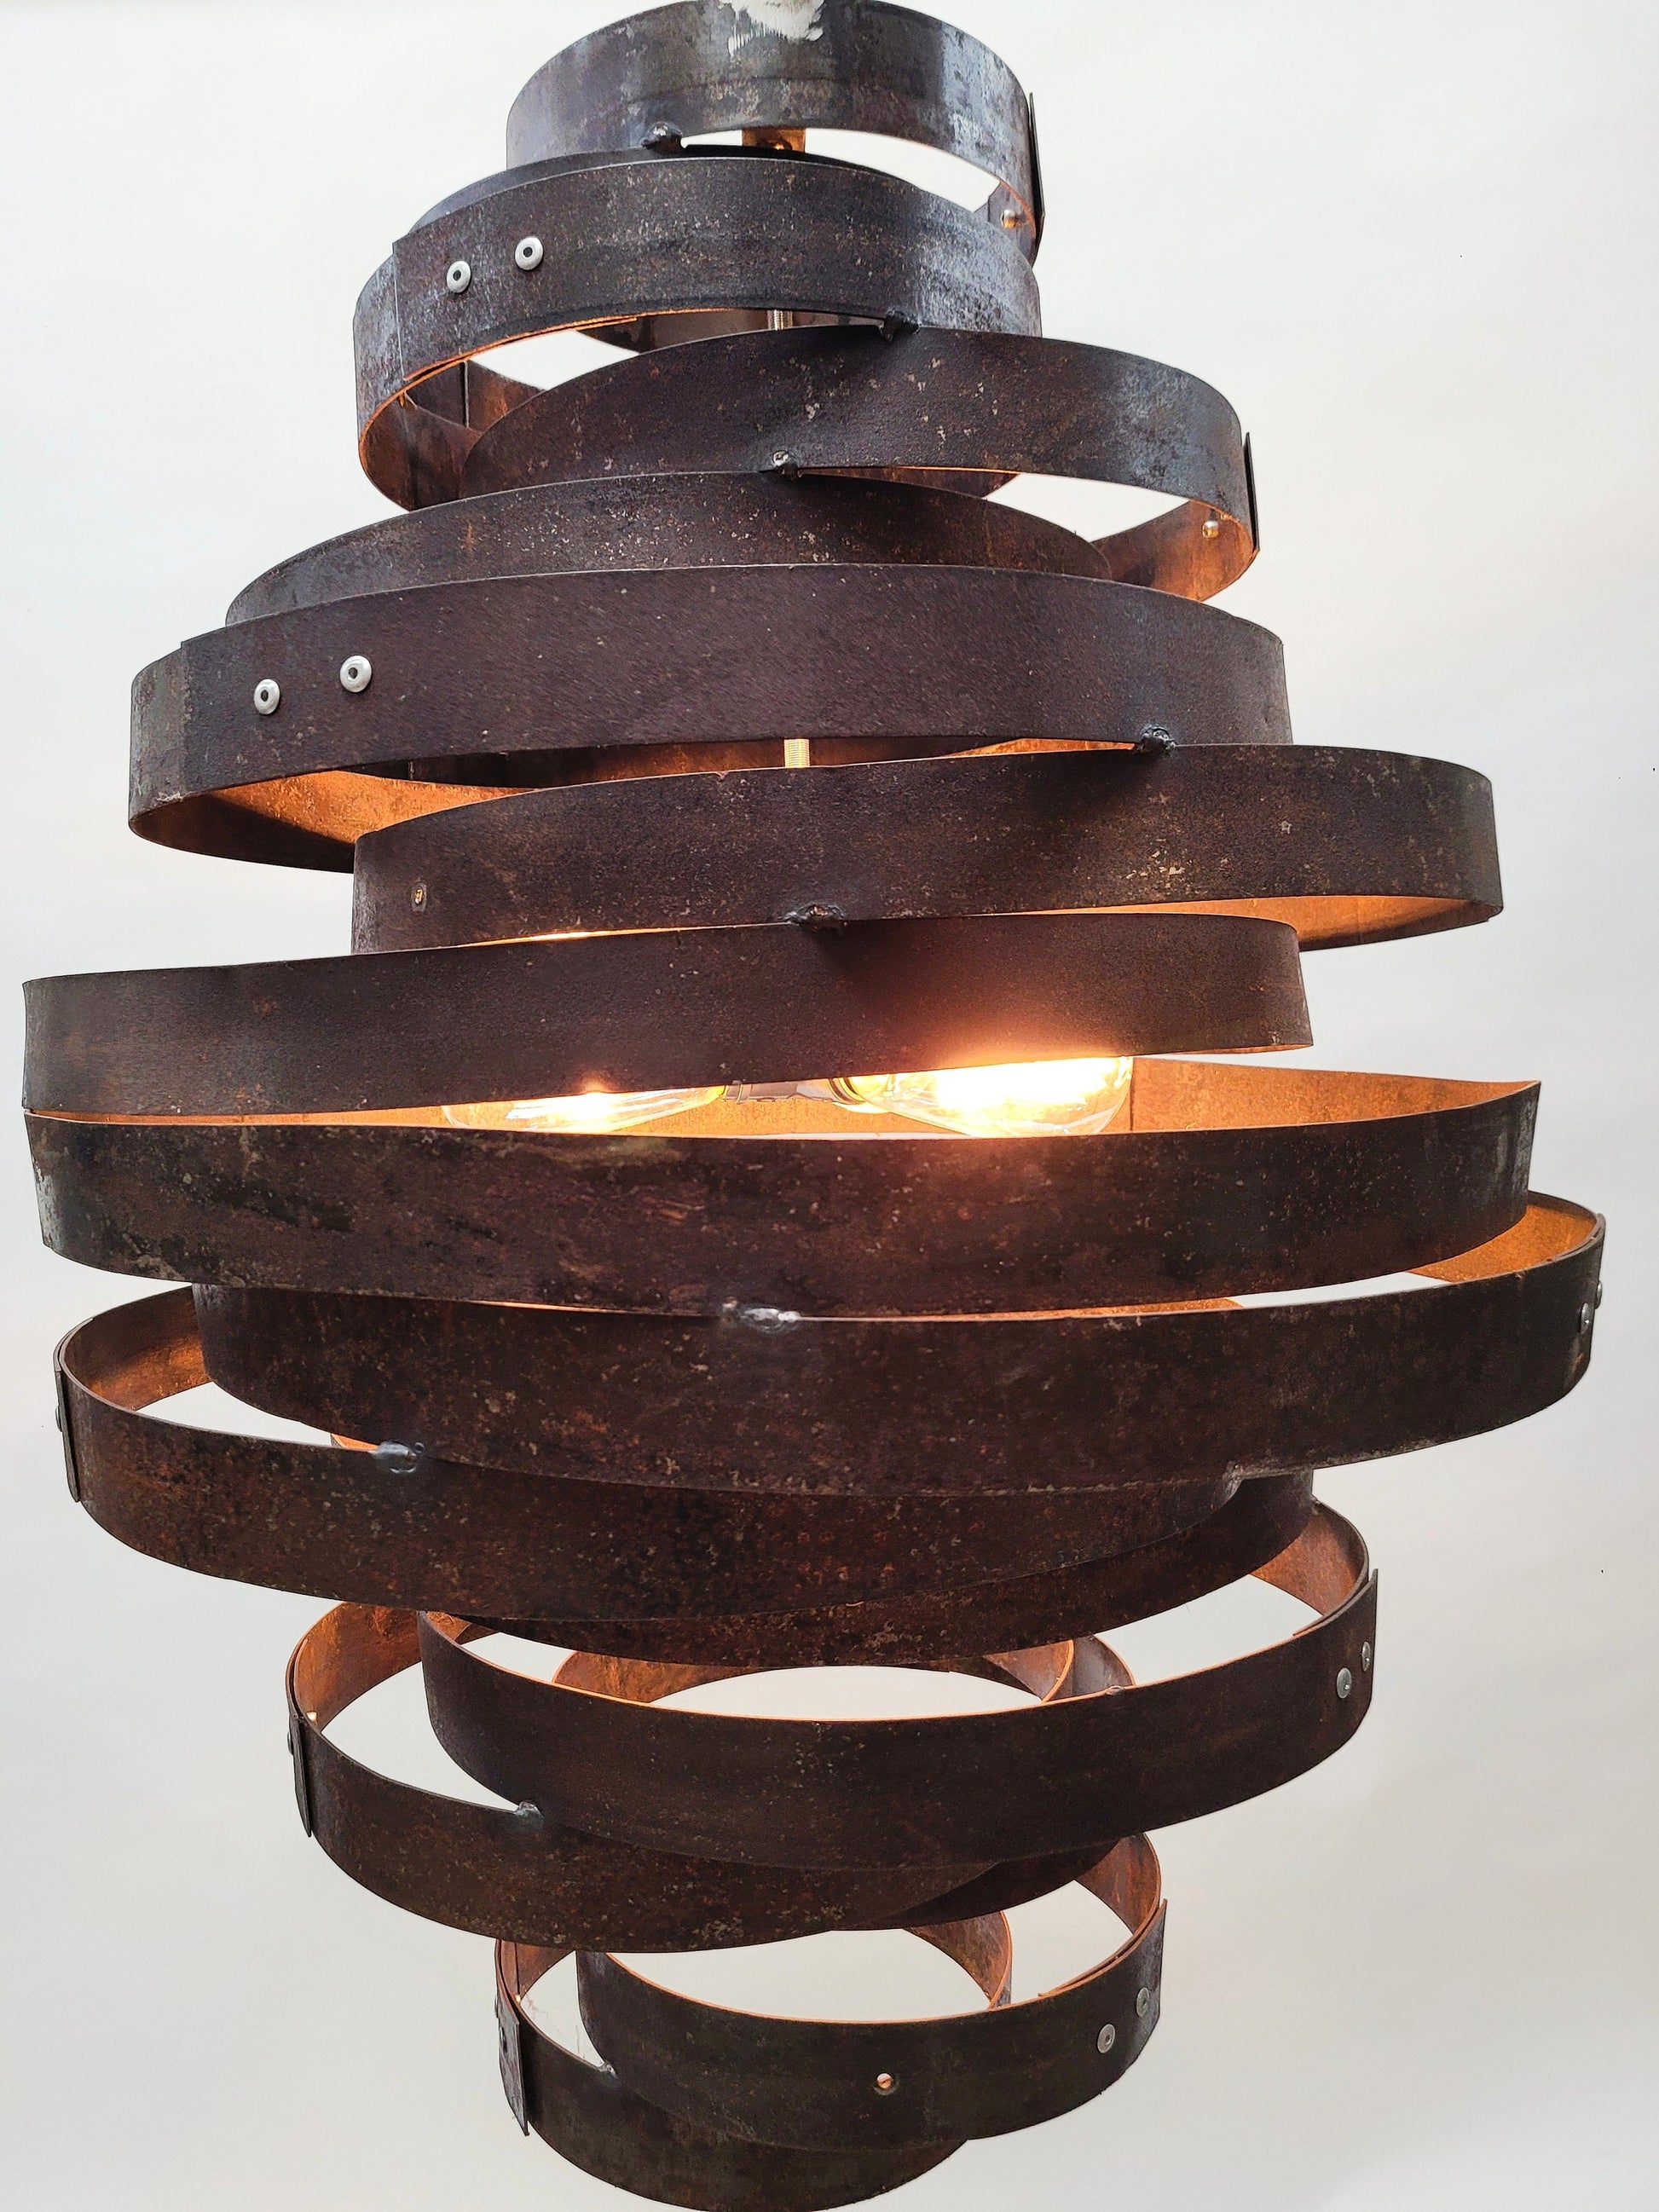 Whiskey Barrel Ring Pendant Light - Virvela- Made from Retired Whisky barrel rings. 100% Recycled!